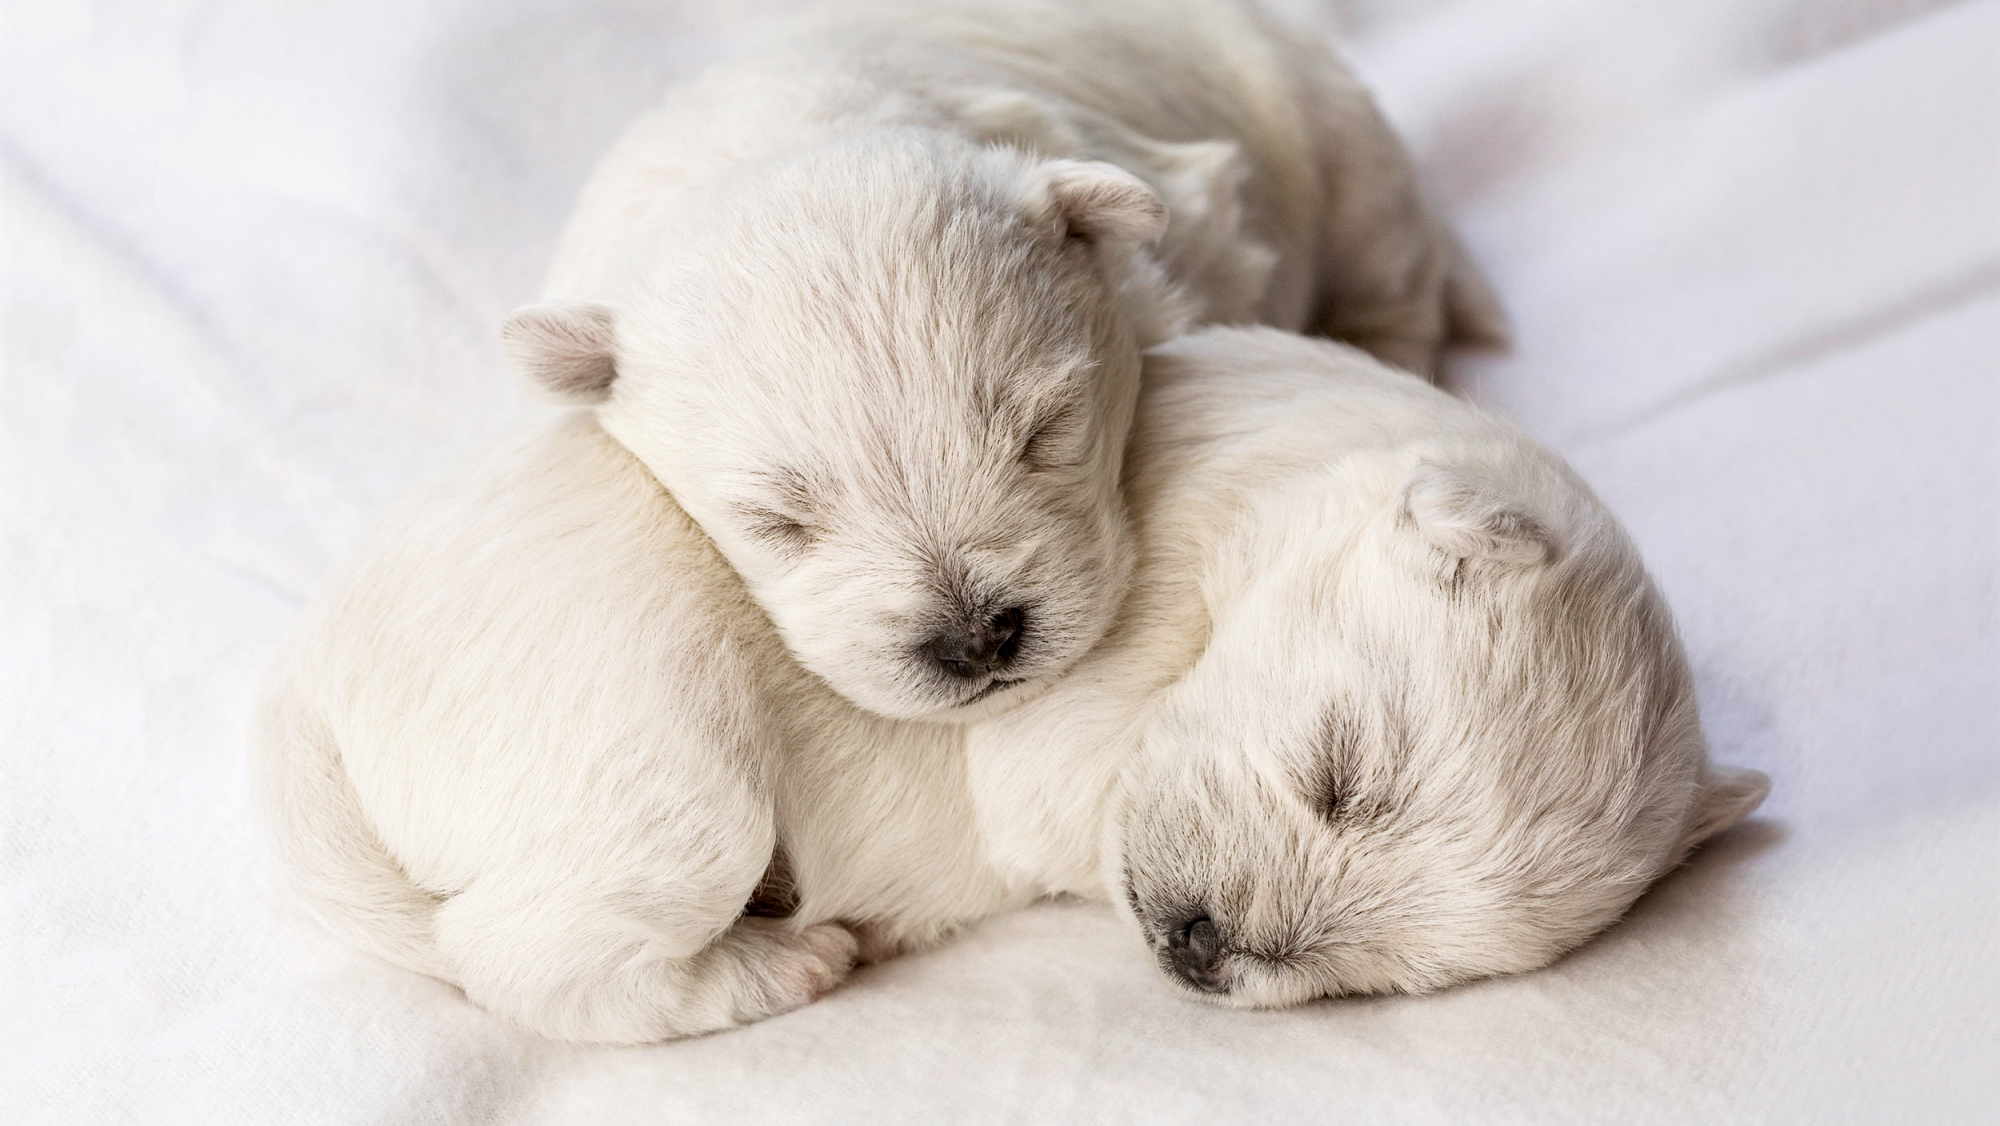 Cachorros neonatos durmiendo